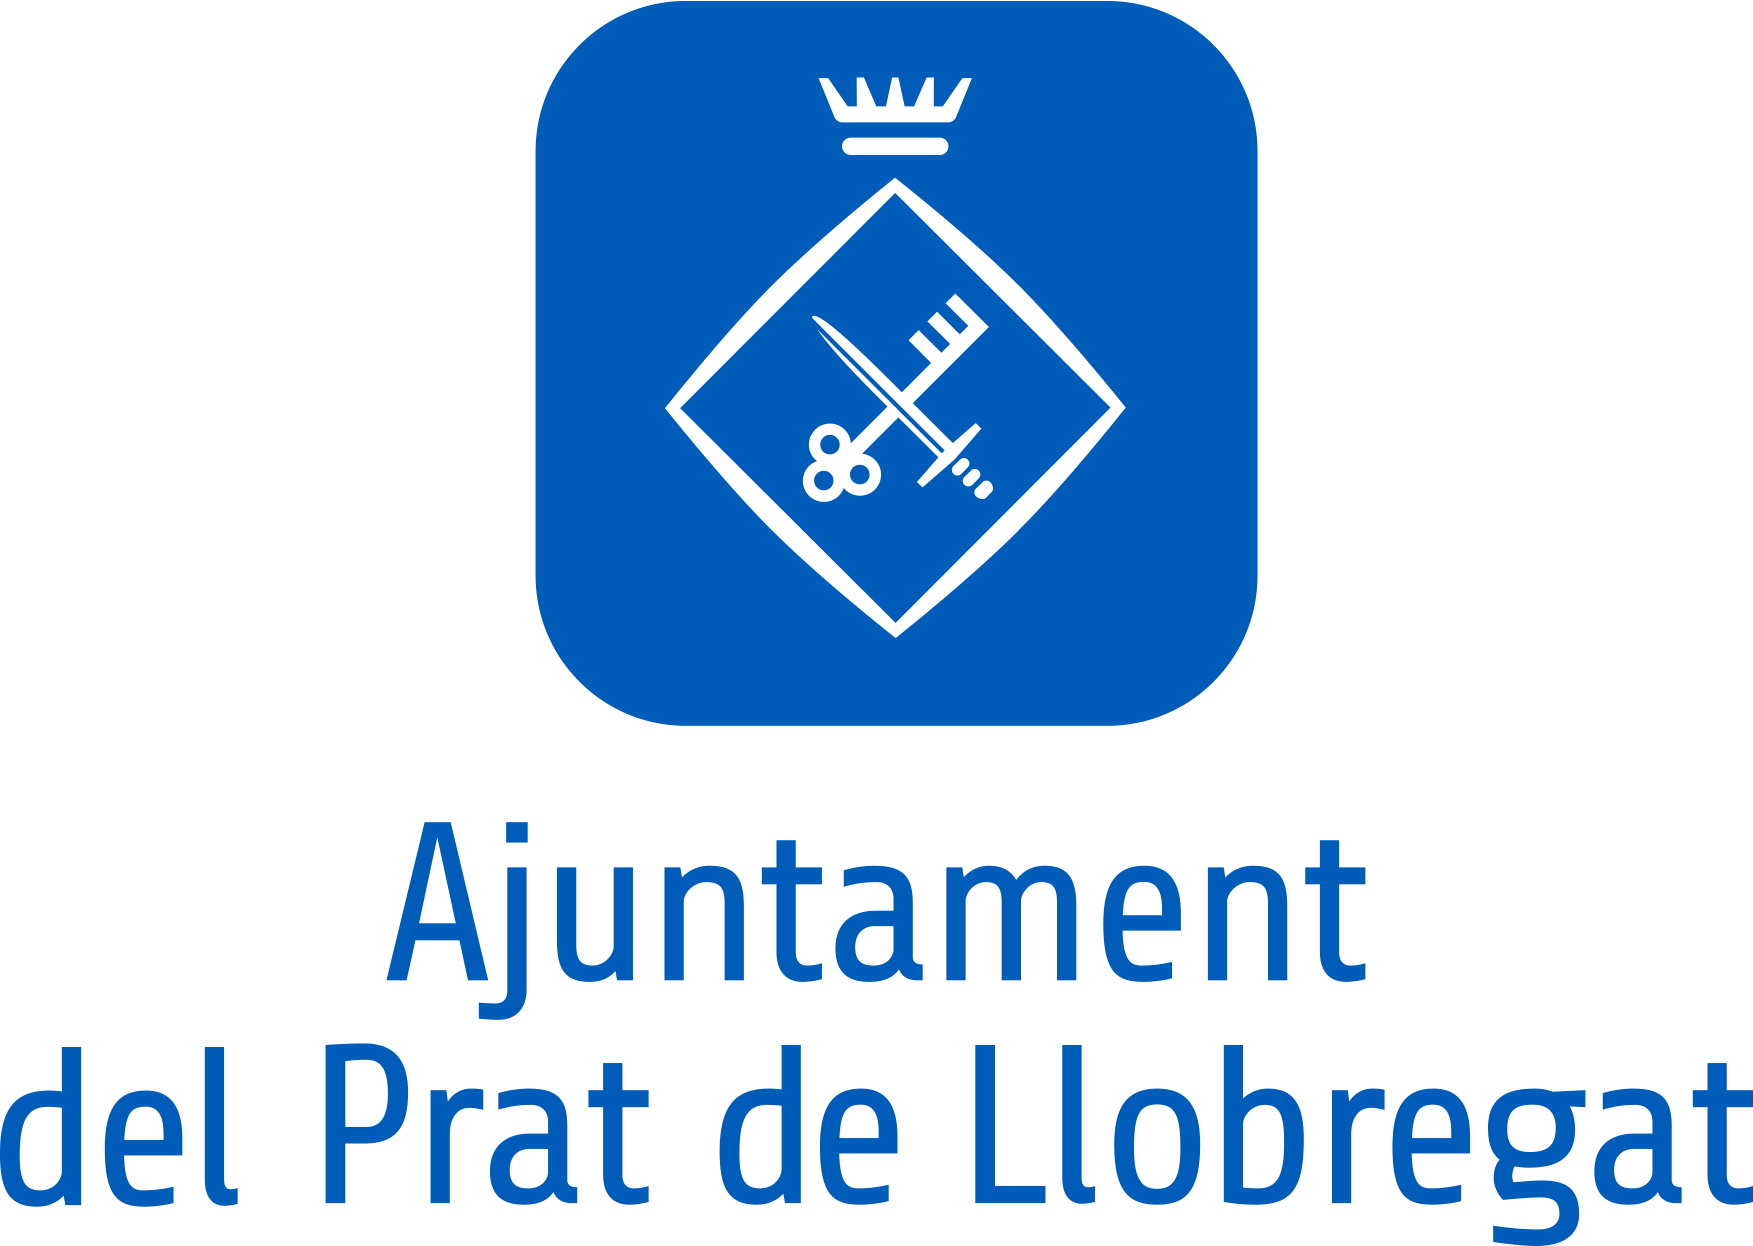 Prat del Llobregat Council